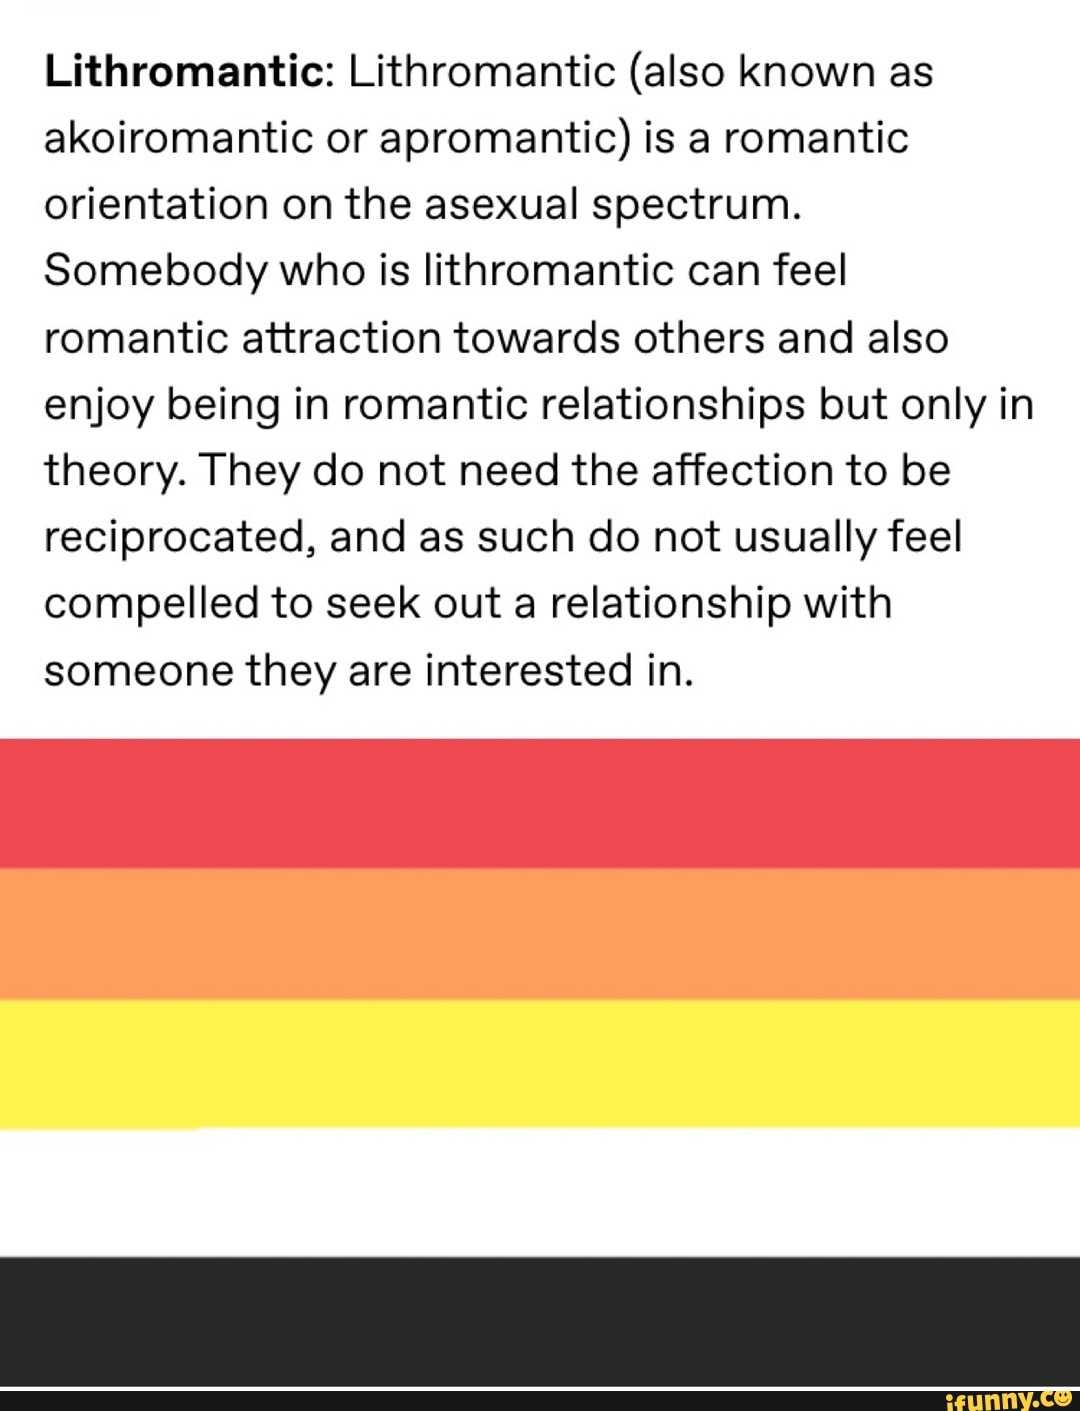 Сапиосексуалы и литромантики: 10 сексуальных ориентаций, о которых вы не знали — здоровое инфо